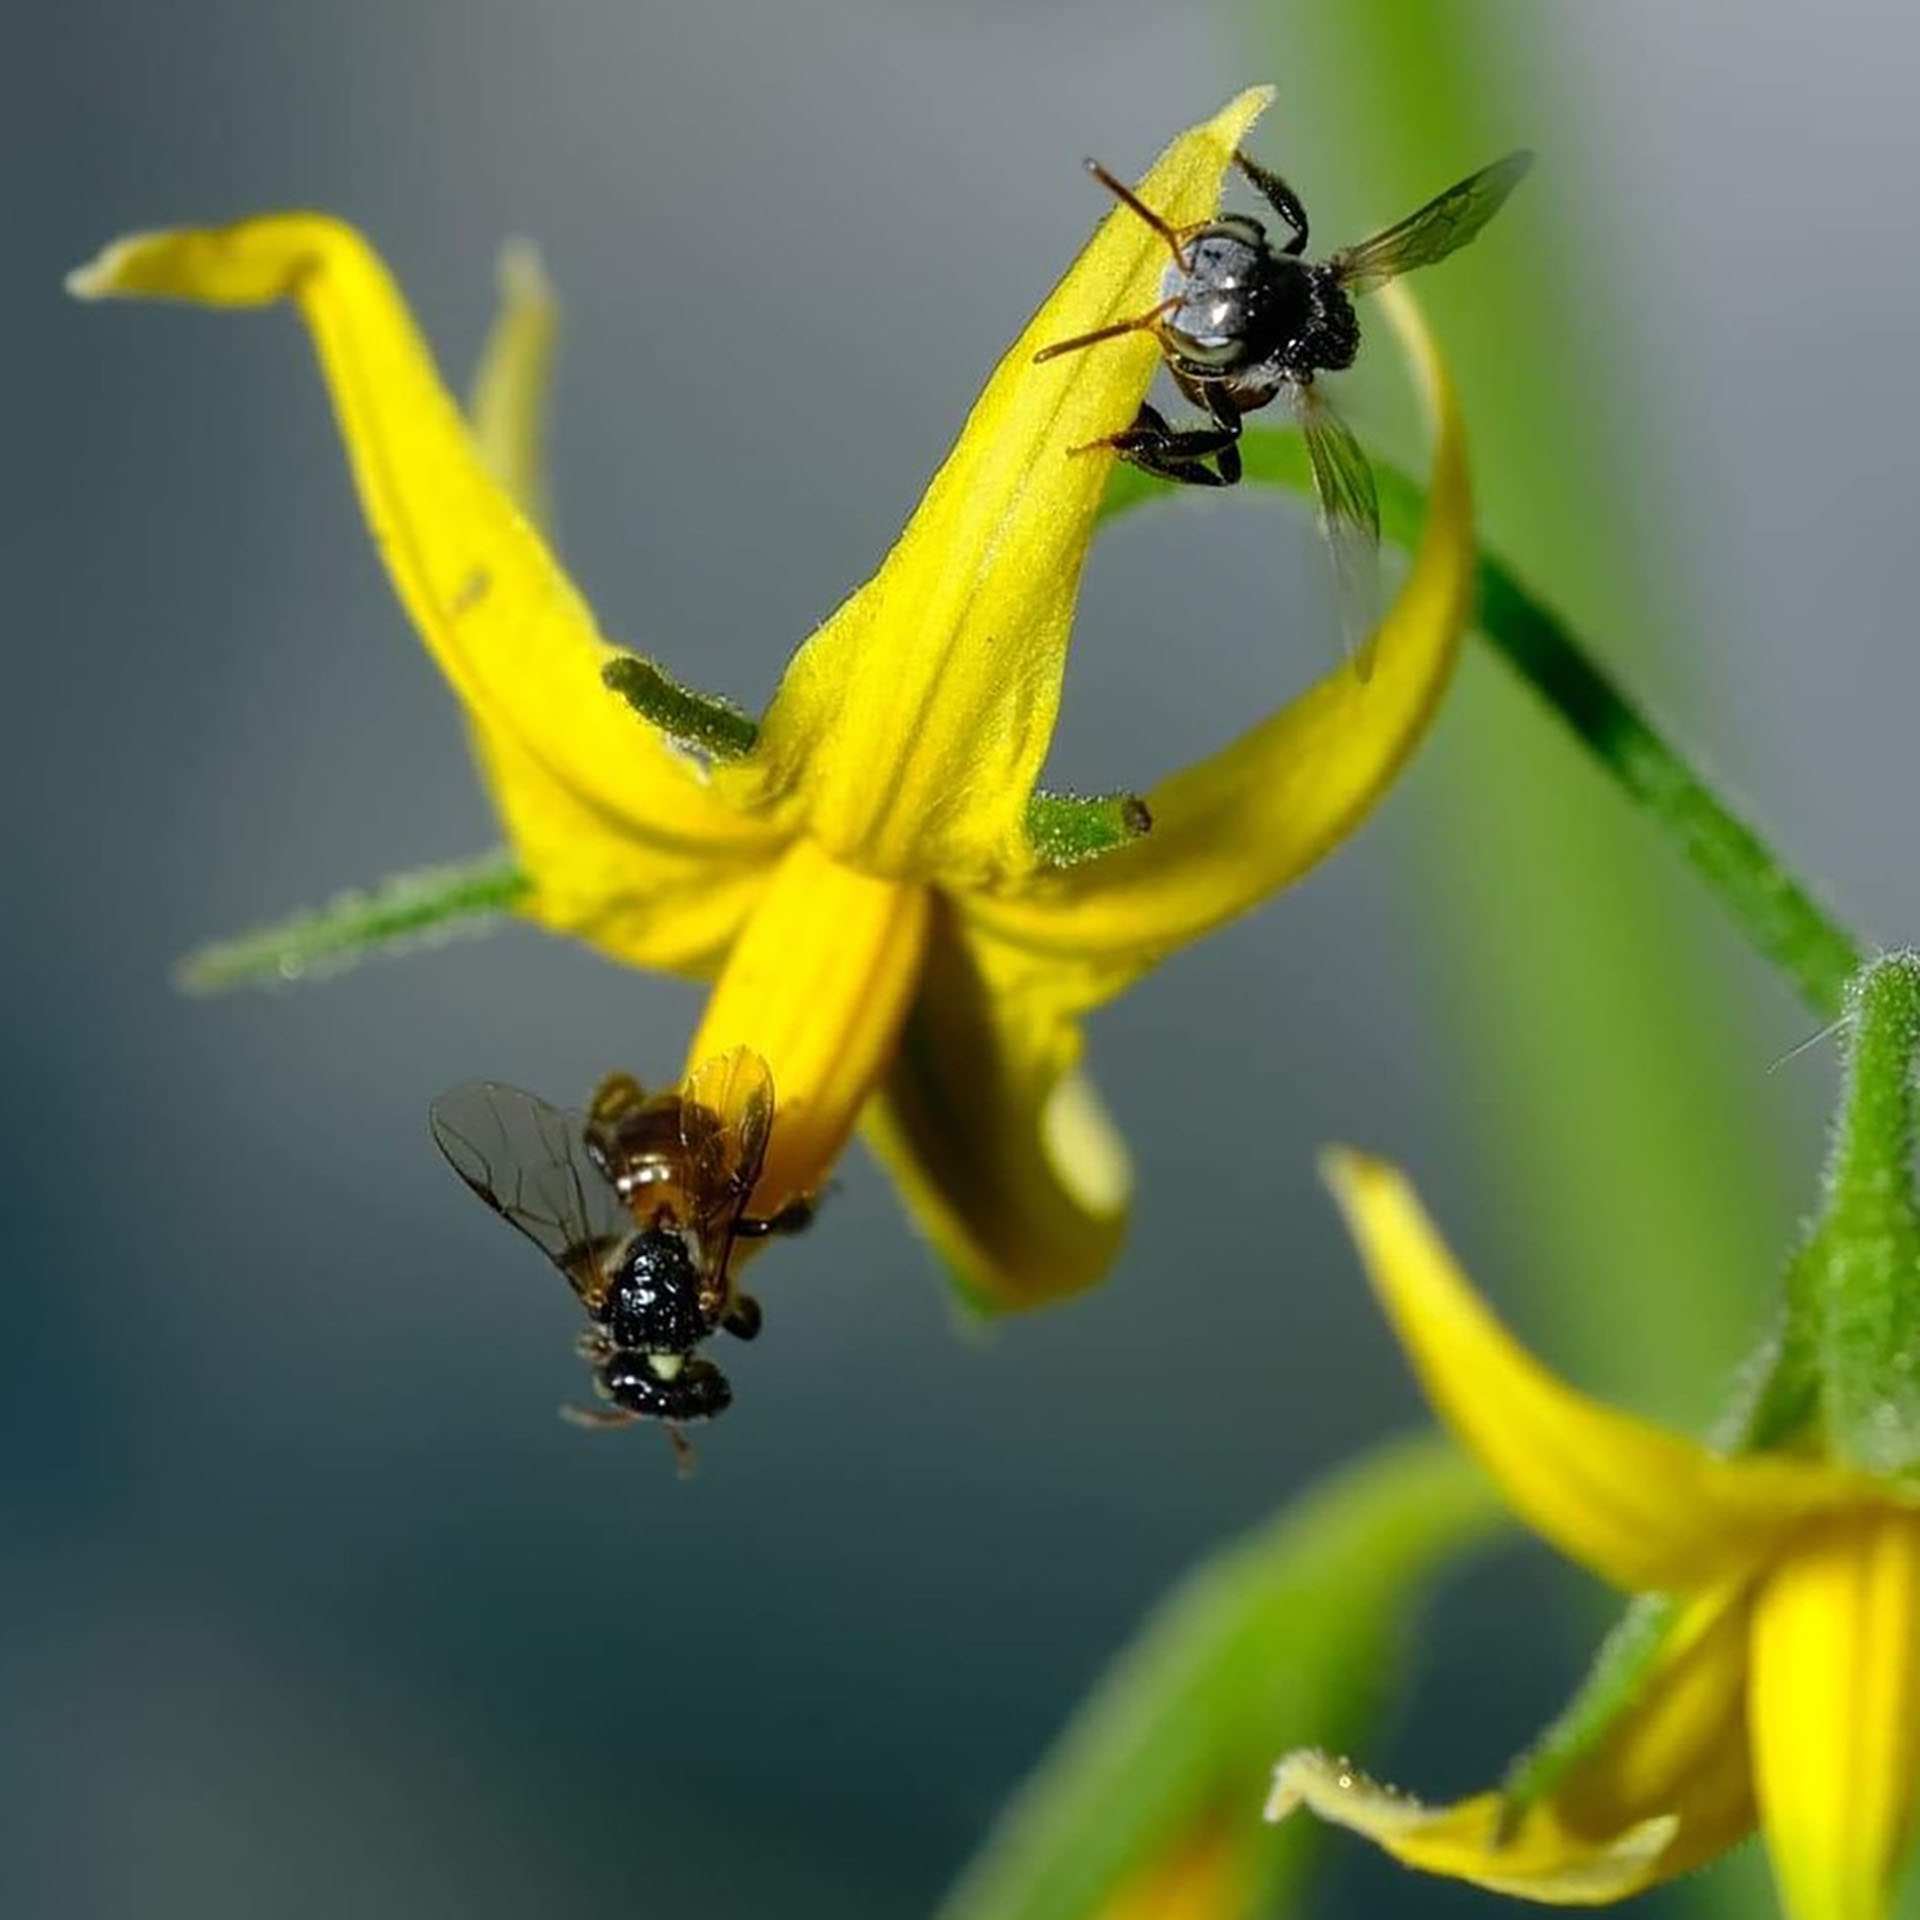 Hoa cà chua thụ phấn bởi ong